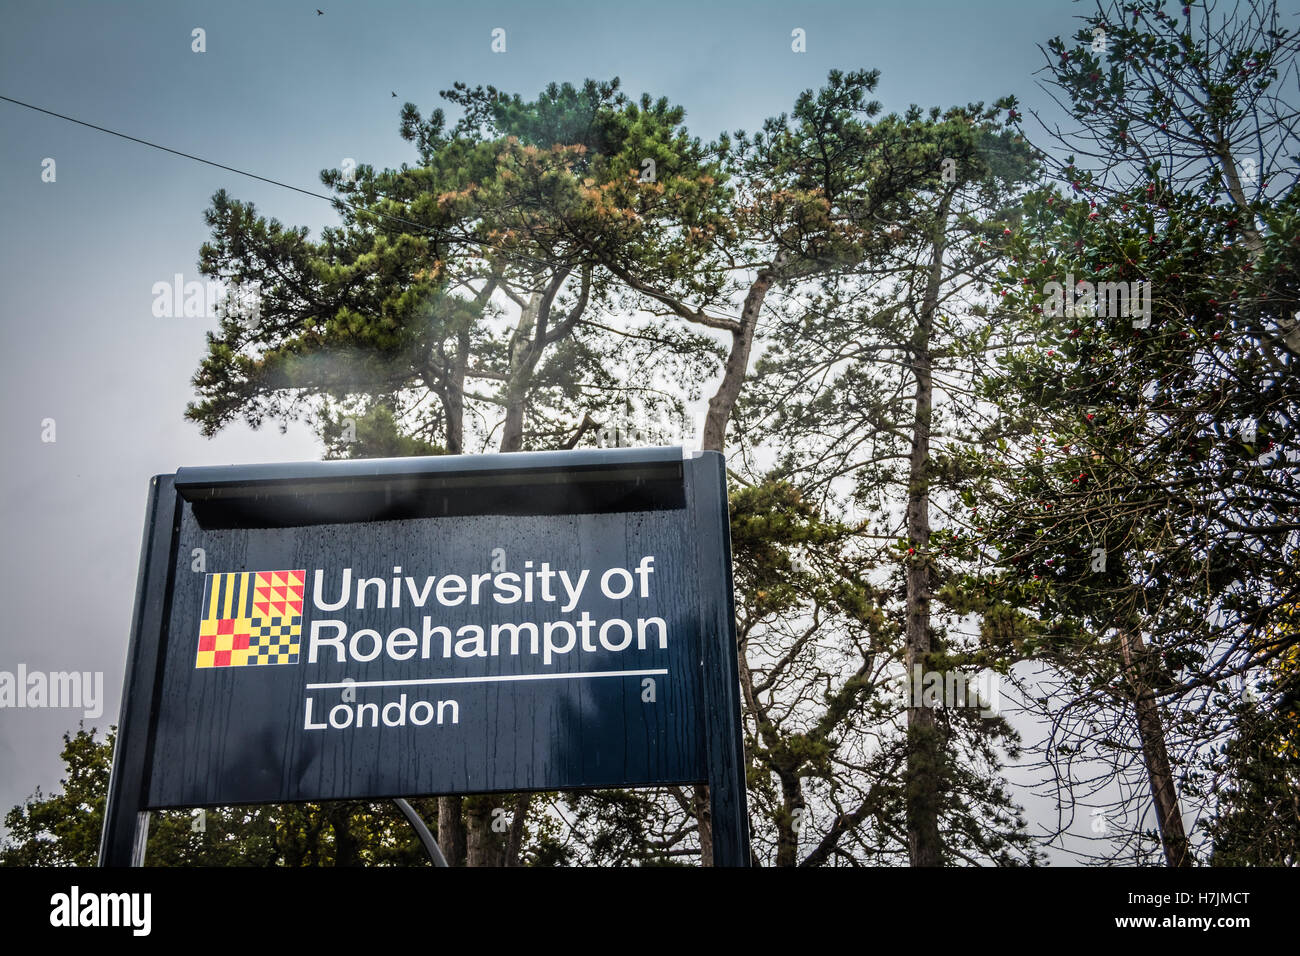 University of Roehampton, London, signage Stock Photo